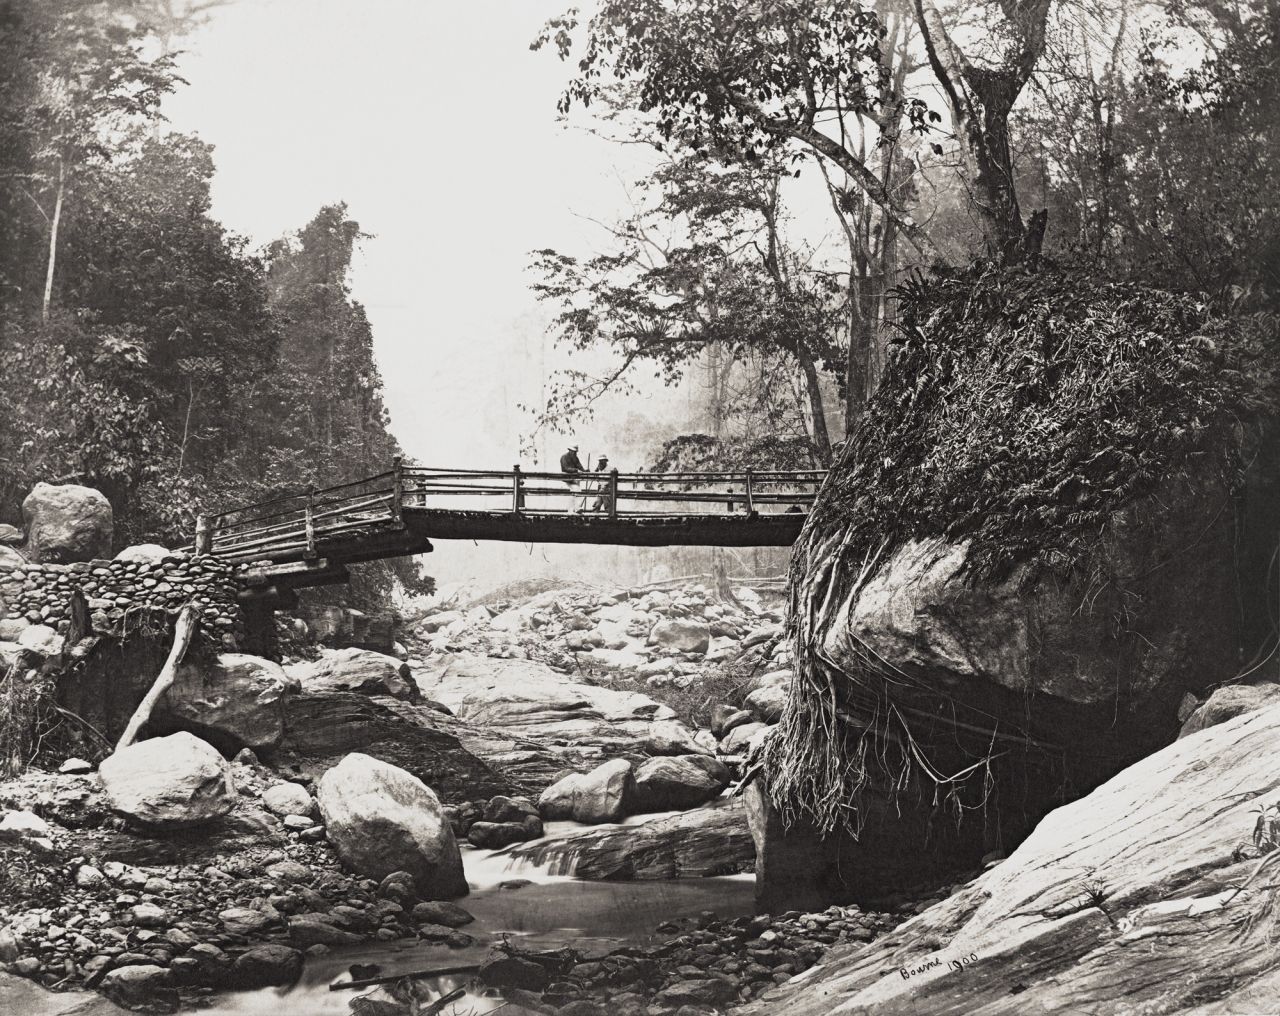 Samuel Bourne's images of a bridge in Darjeeling, West Bengal, from 1863-70.